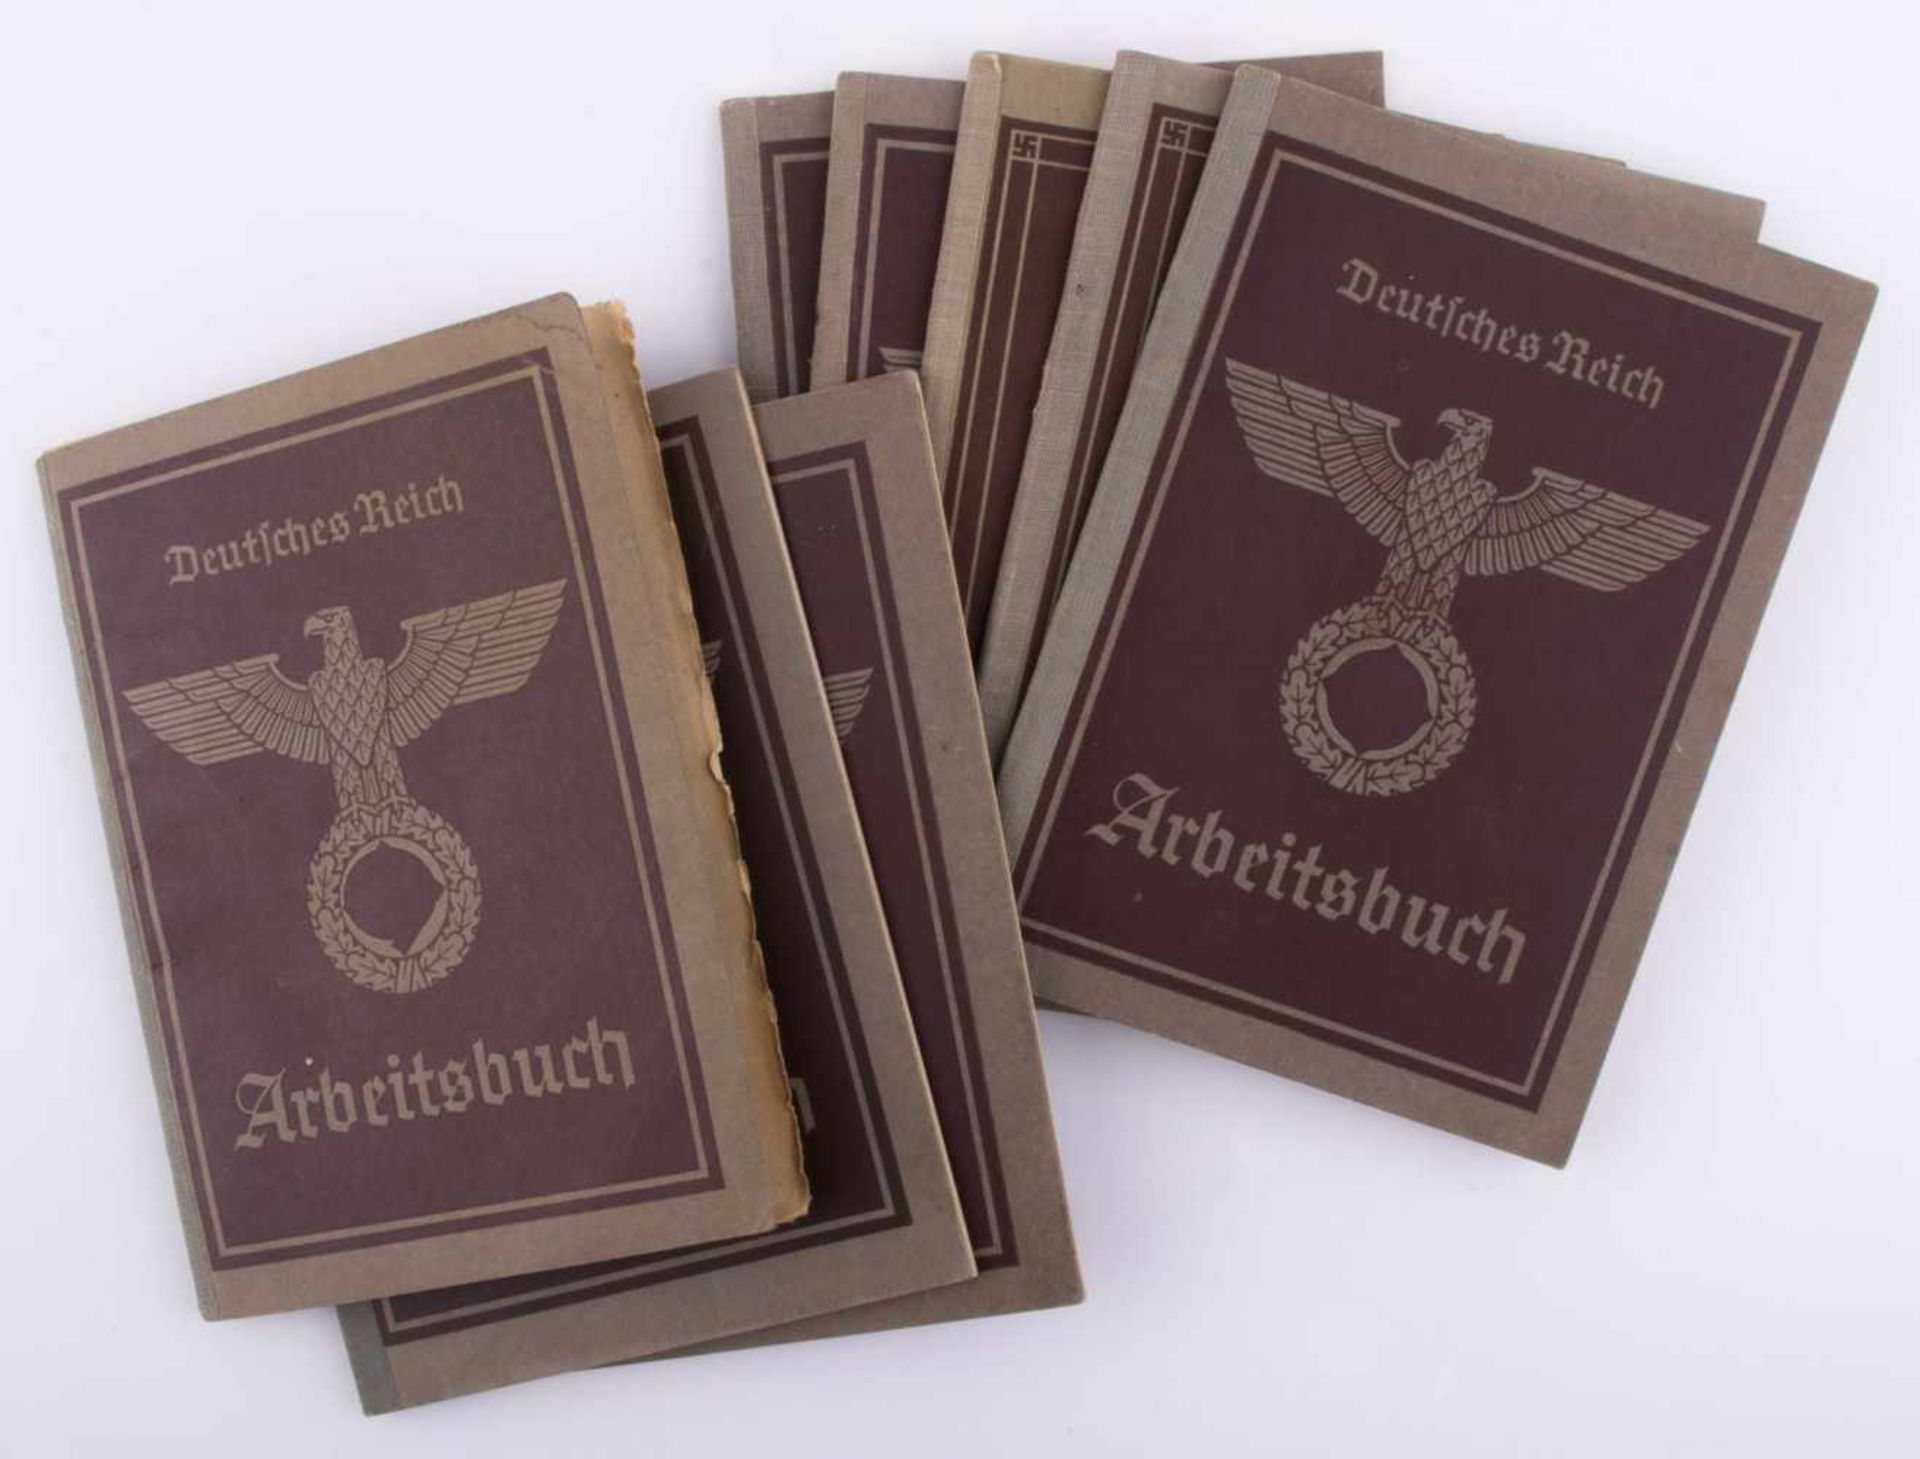 Konvolut Arbeitsbücher Deutsches Reich 1935 8 Stück, alle gut erhalten - Bild 2 aus 2